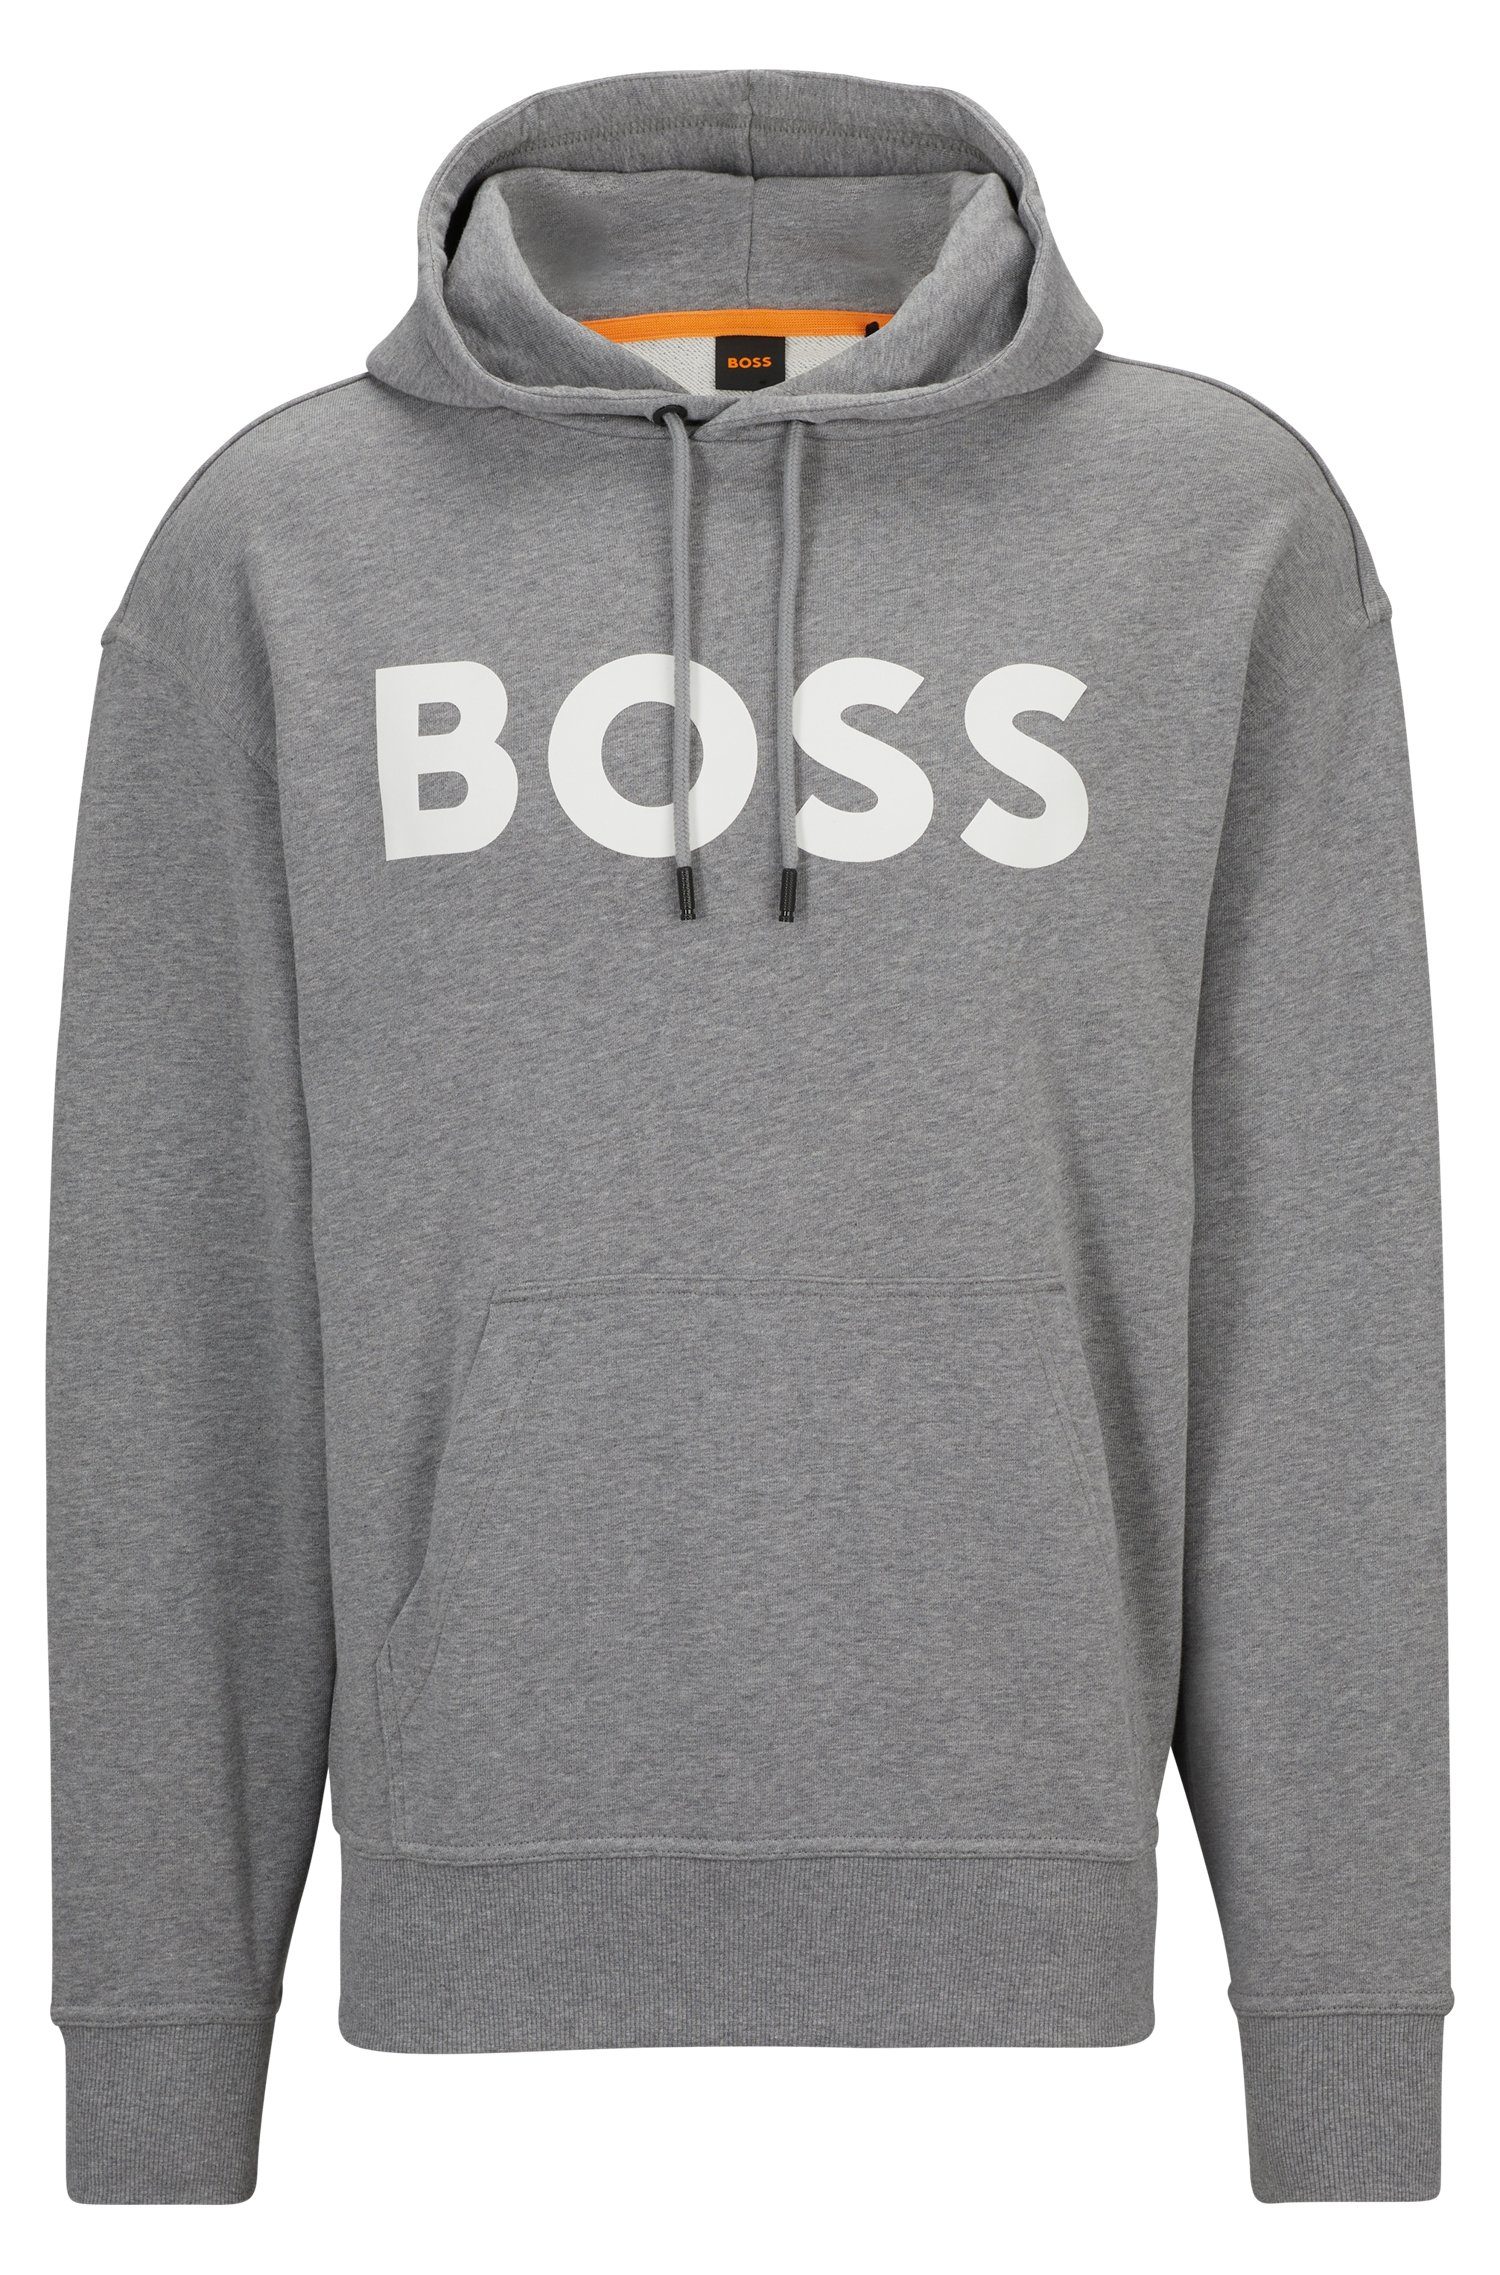 BOSS ORANGE Sweatshirt WebasicHood mit weißem Logodruck